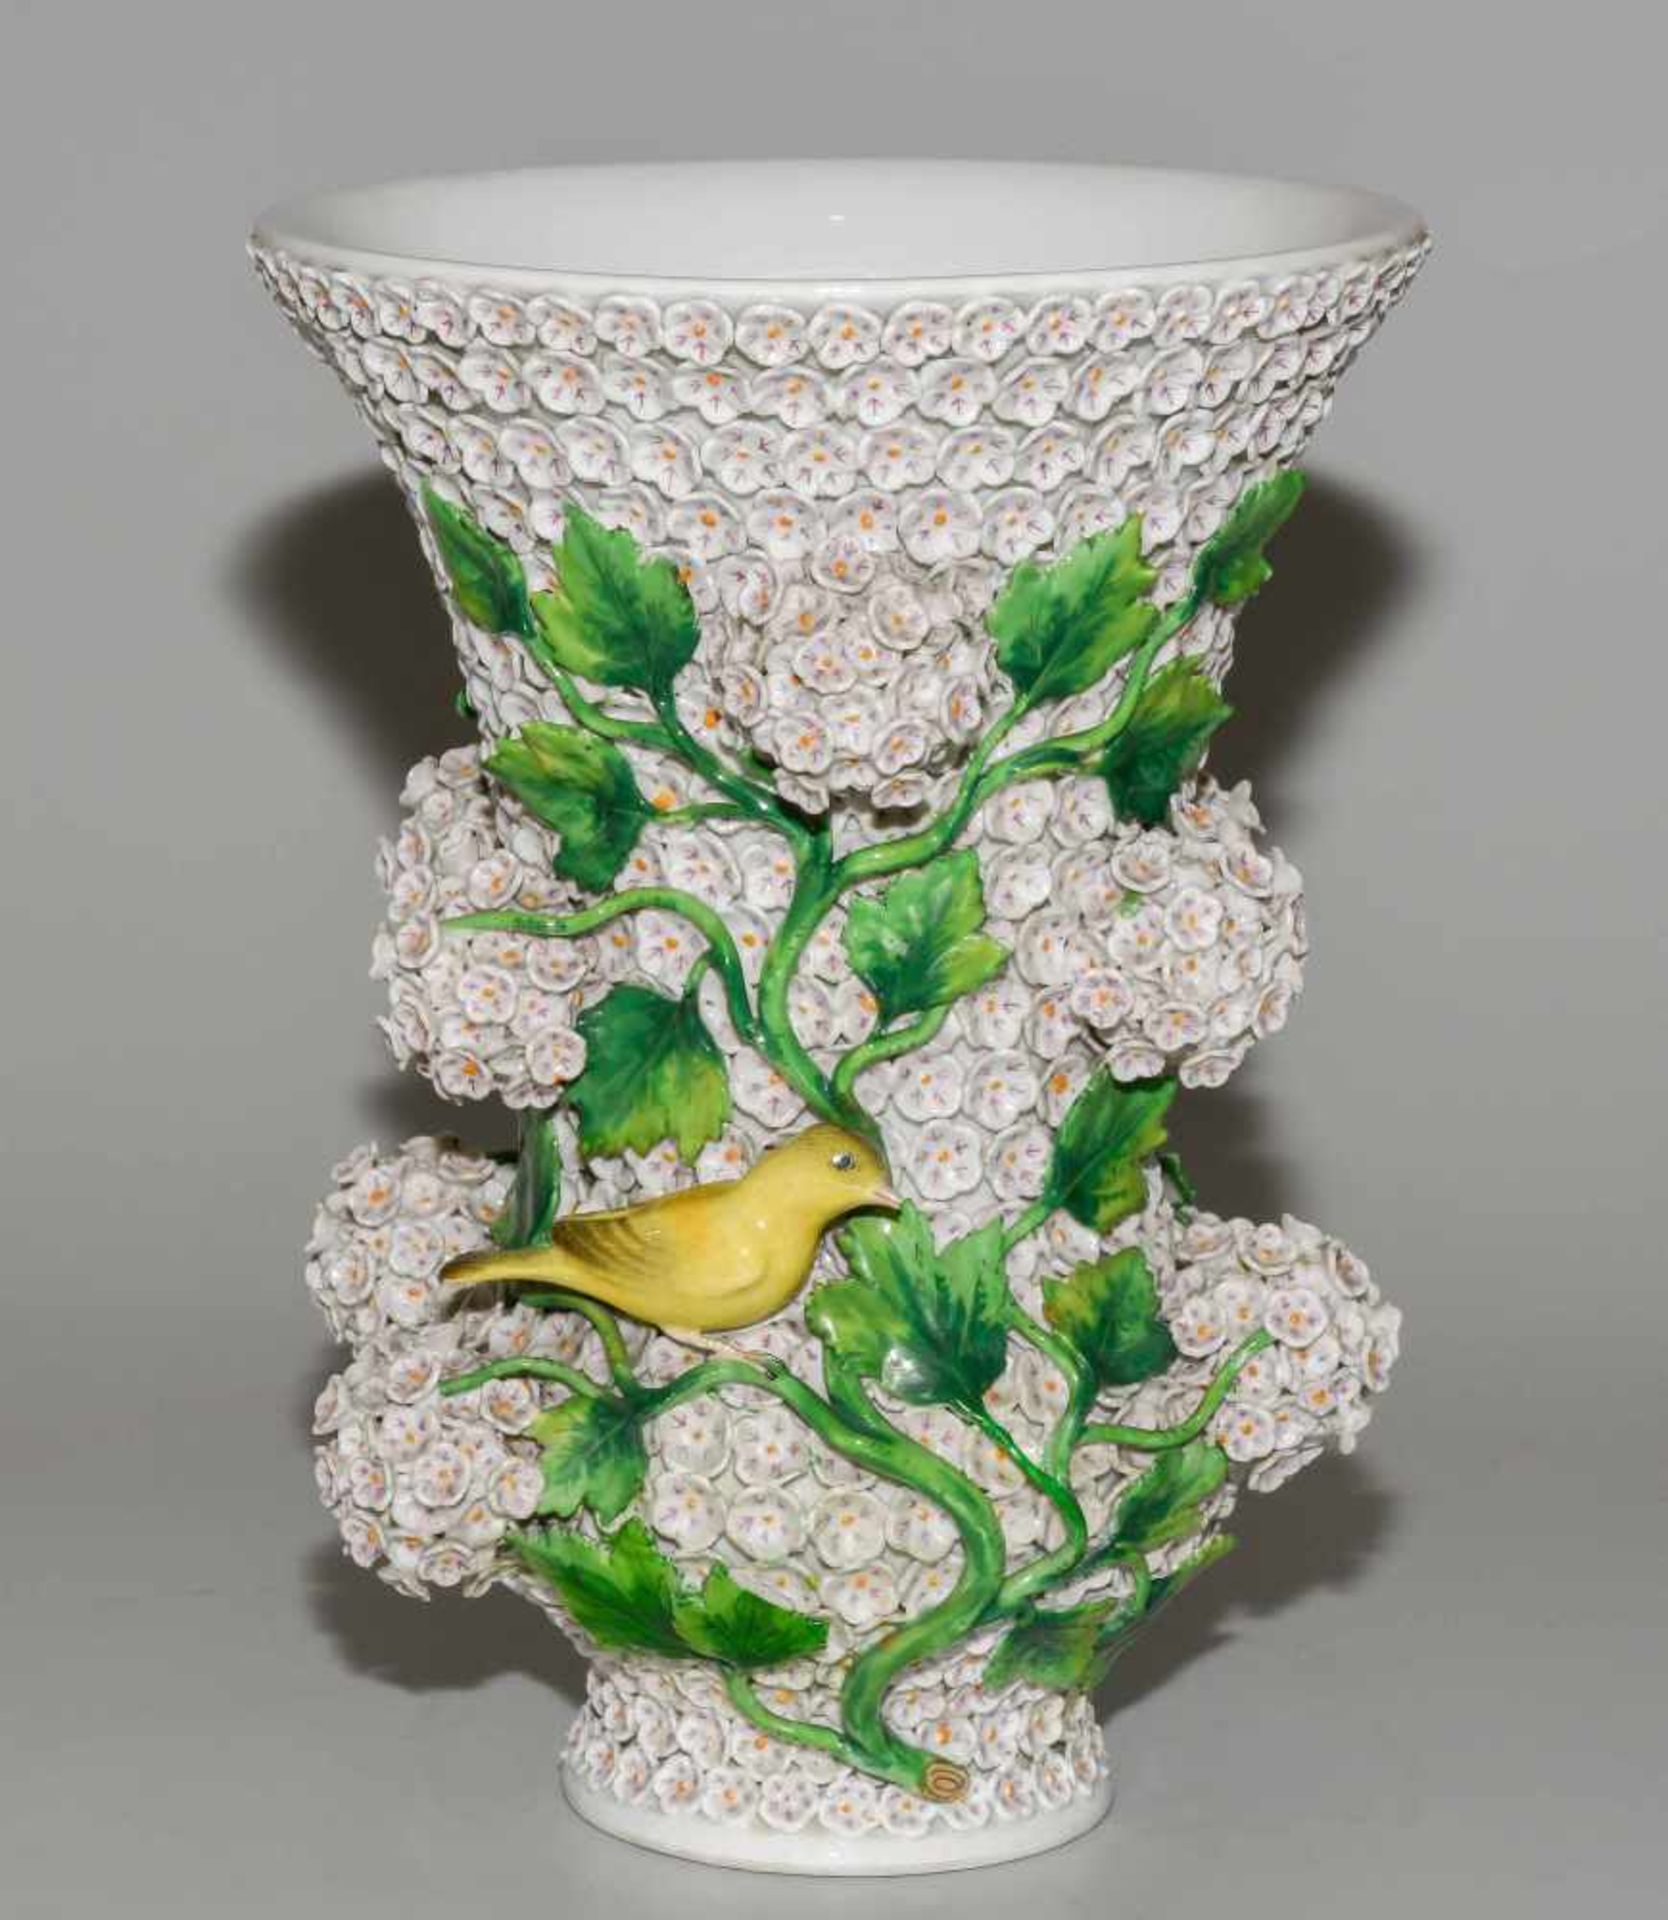 Schneeballvase, MeissenUm 1900. Porzellan, aufgelegter Blütendekor, zwei Vögel. Farbige Bemalung. - Image 6 of 12